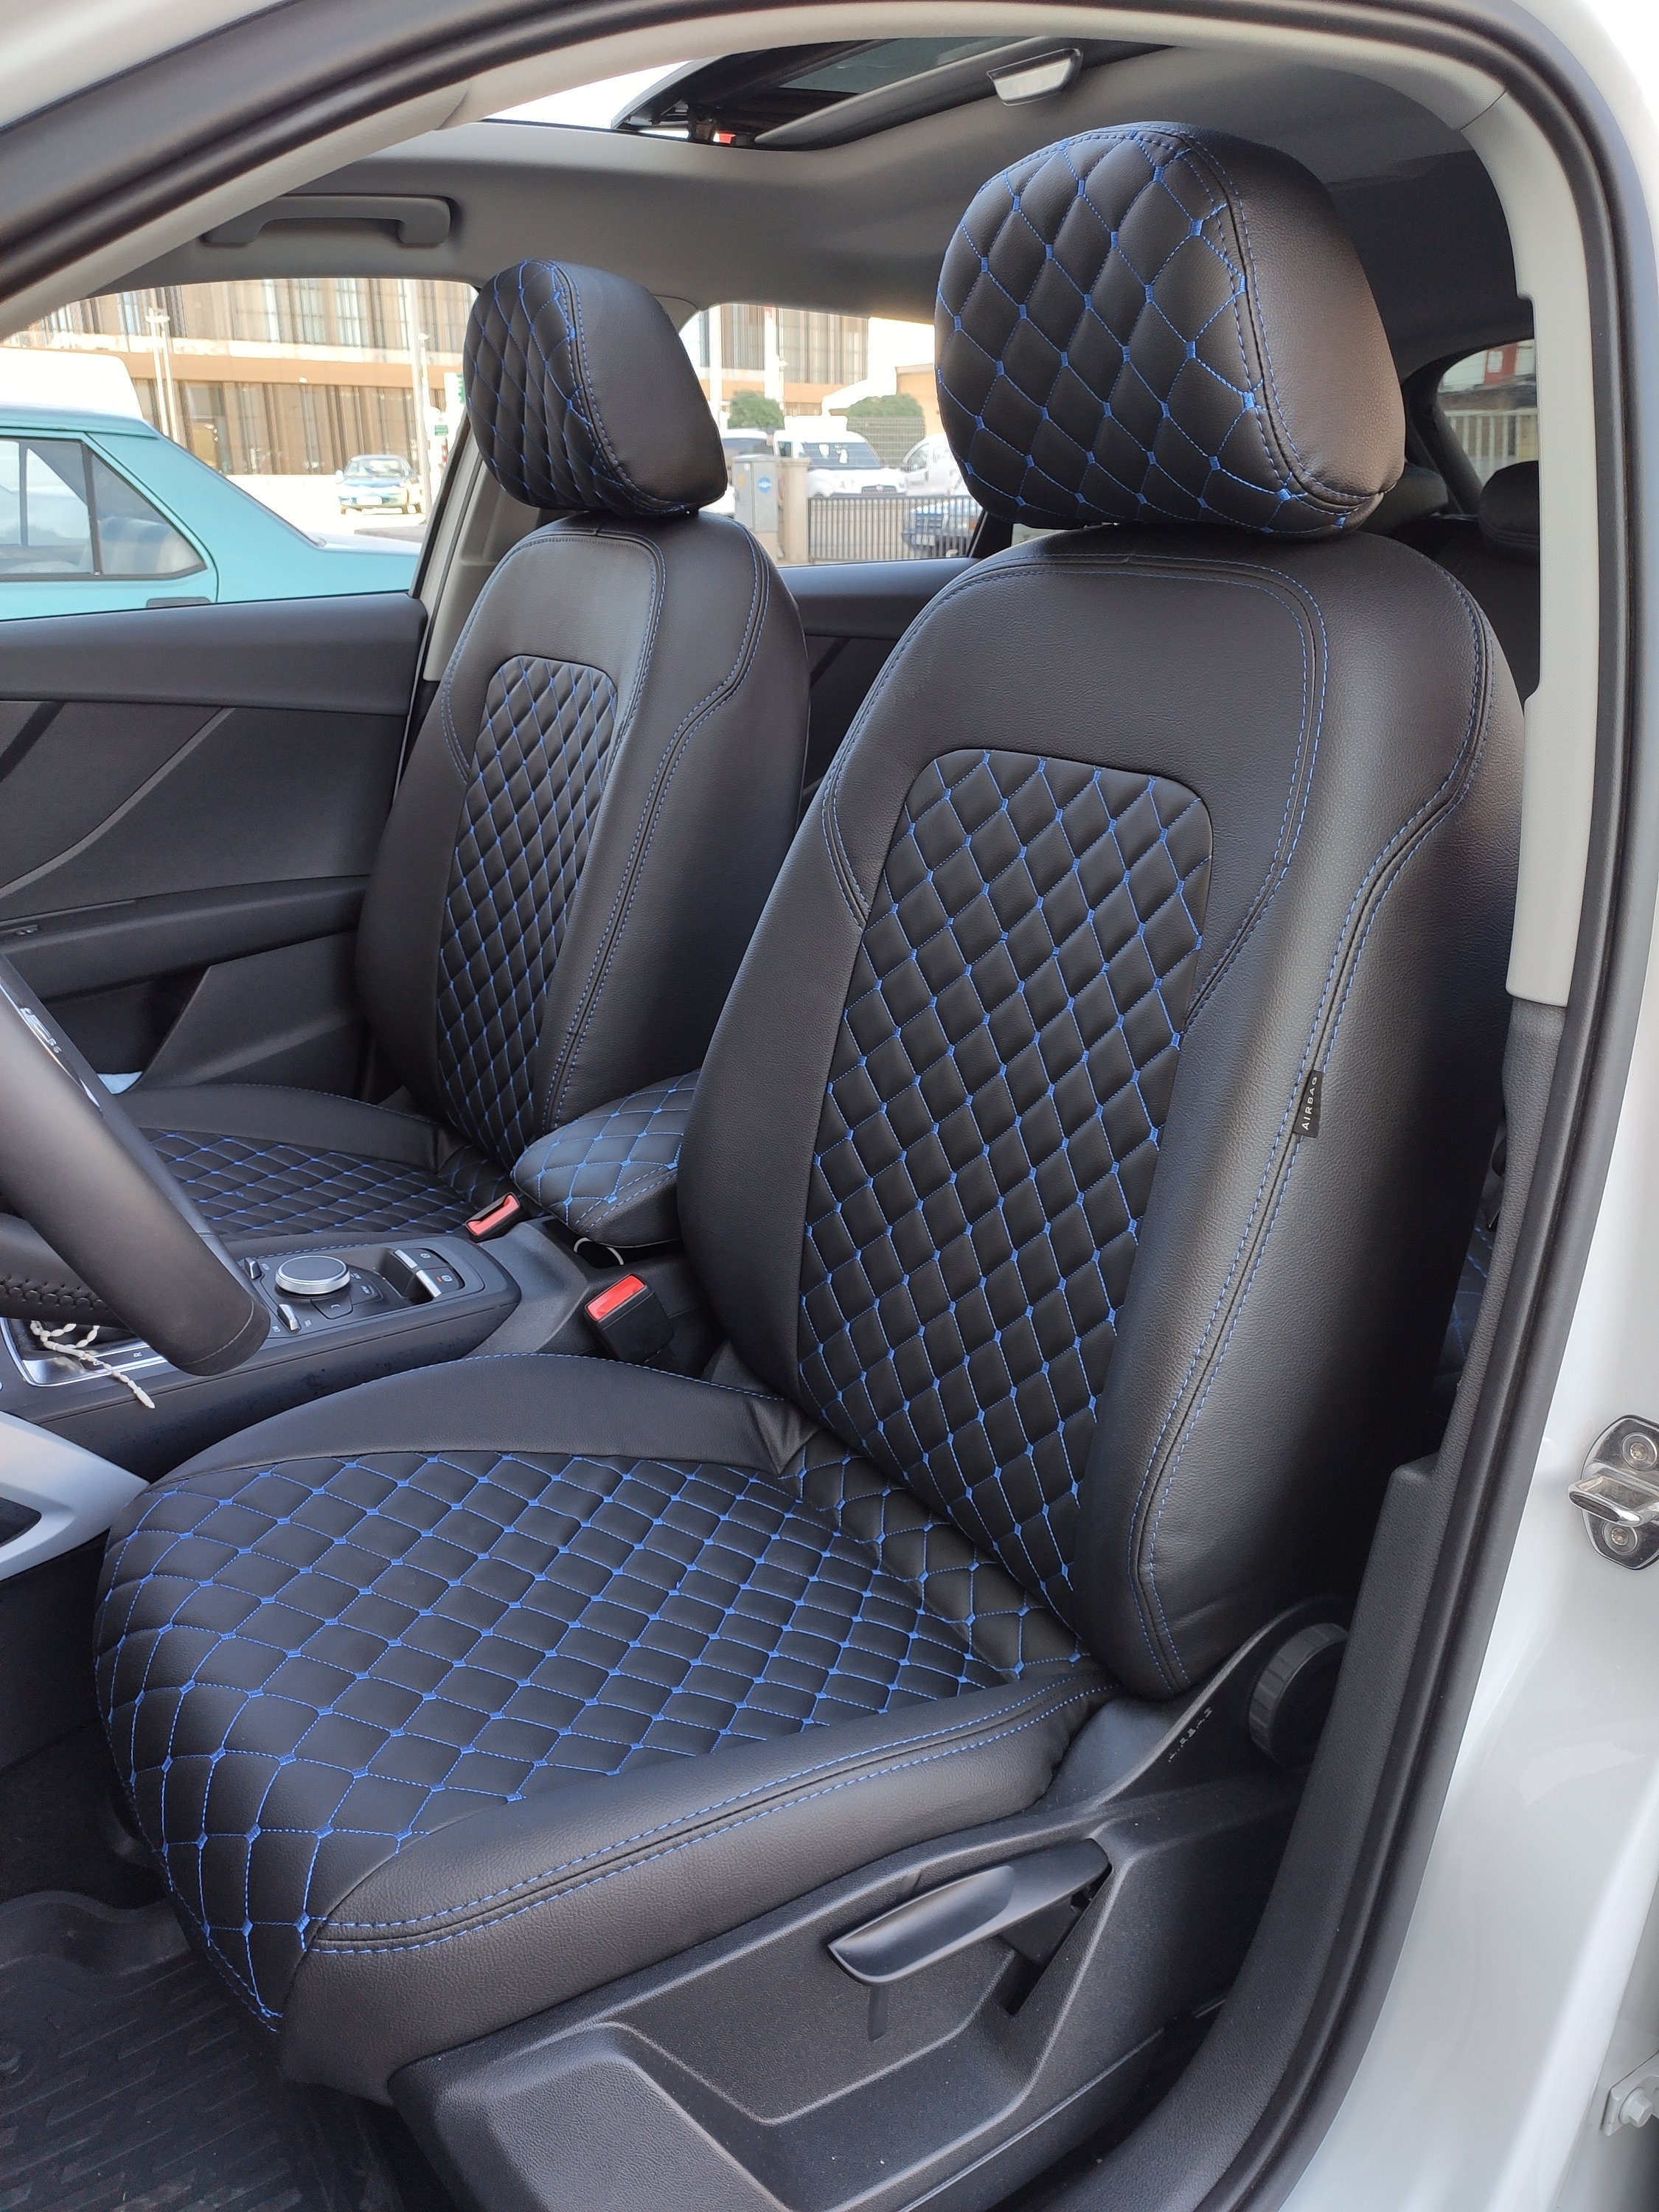 Audi seat covers - .de